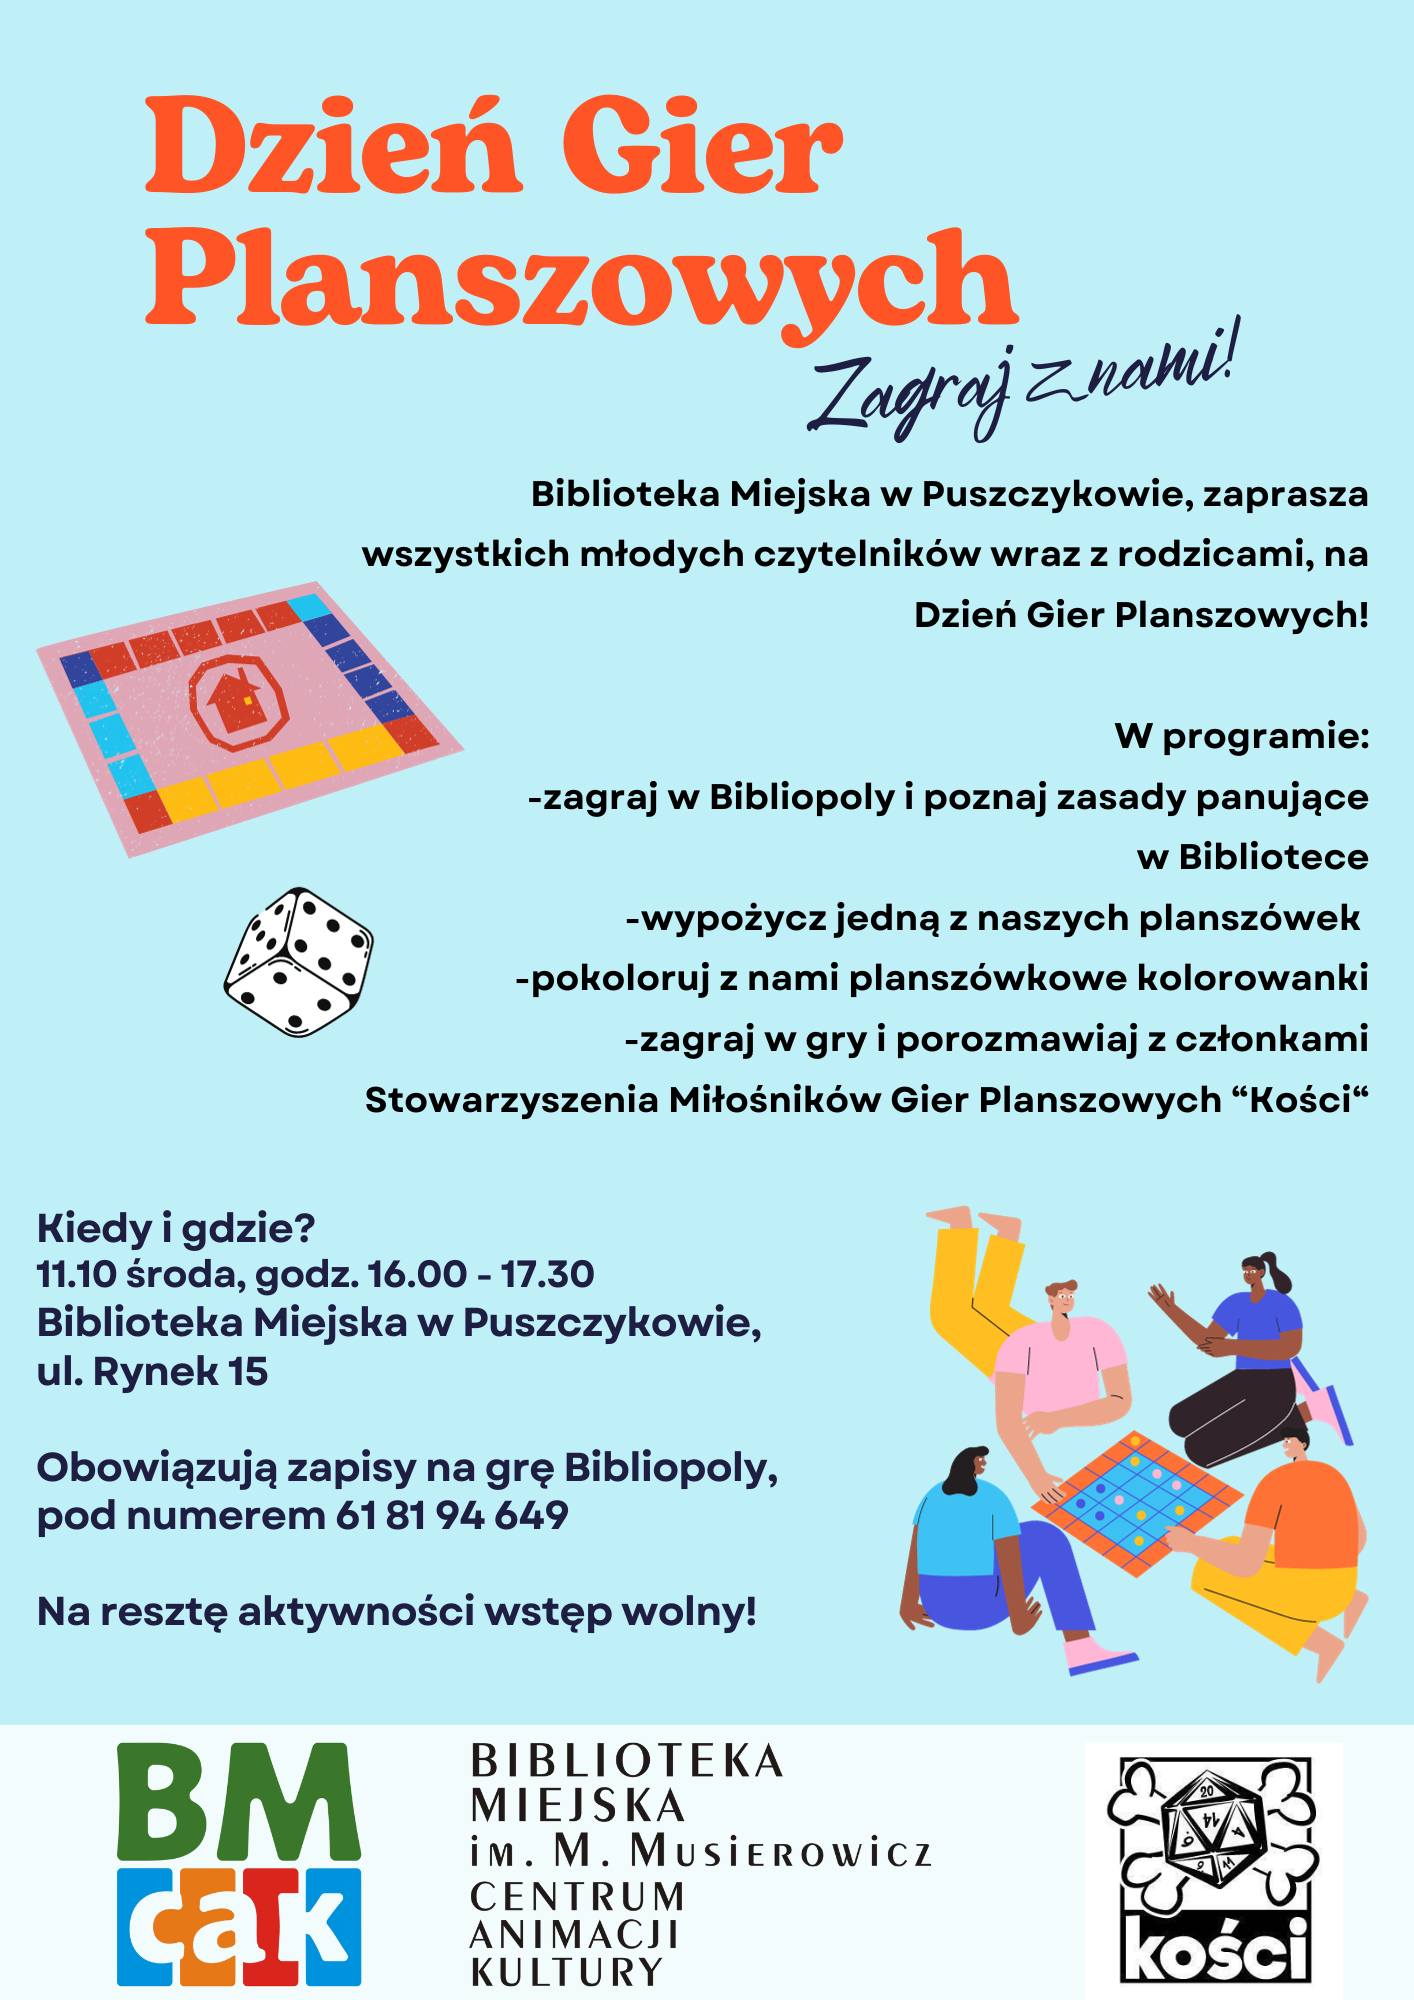 Biblioteka Miejska w Puszczykowie zaprasza na Dzień Gier Planszowych!